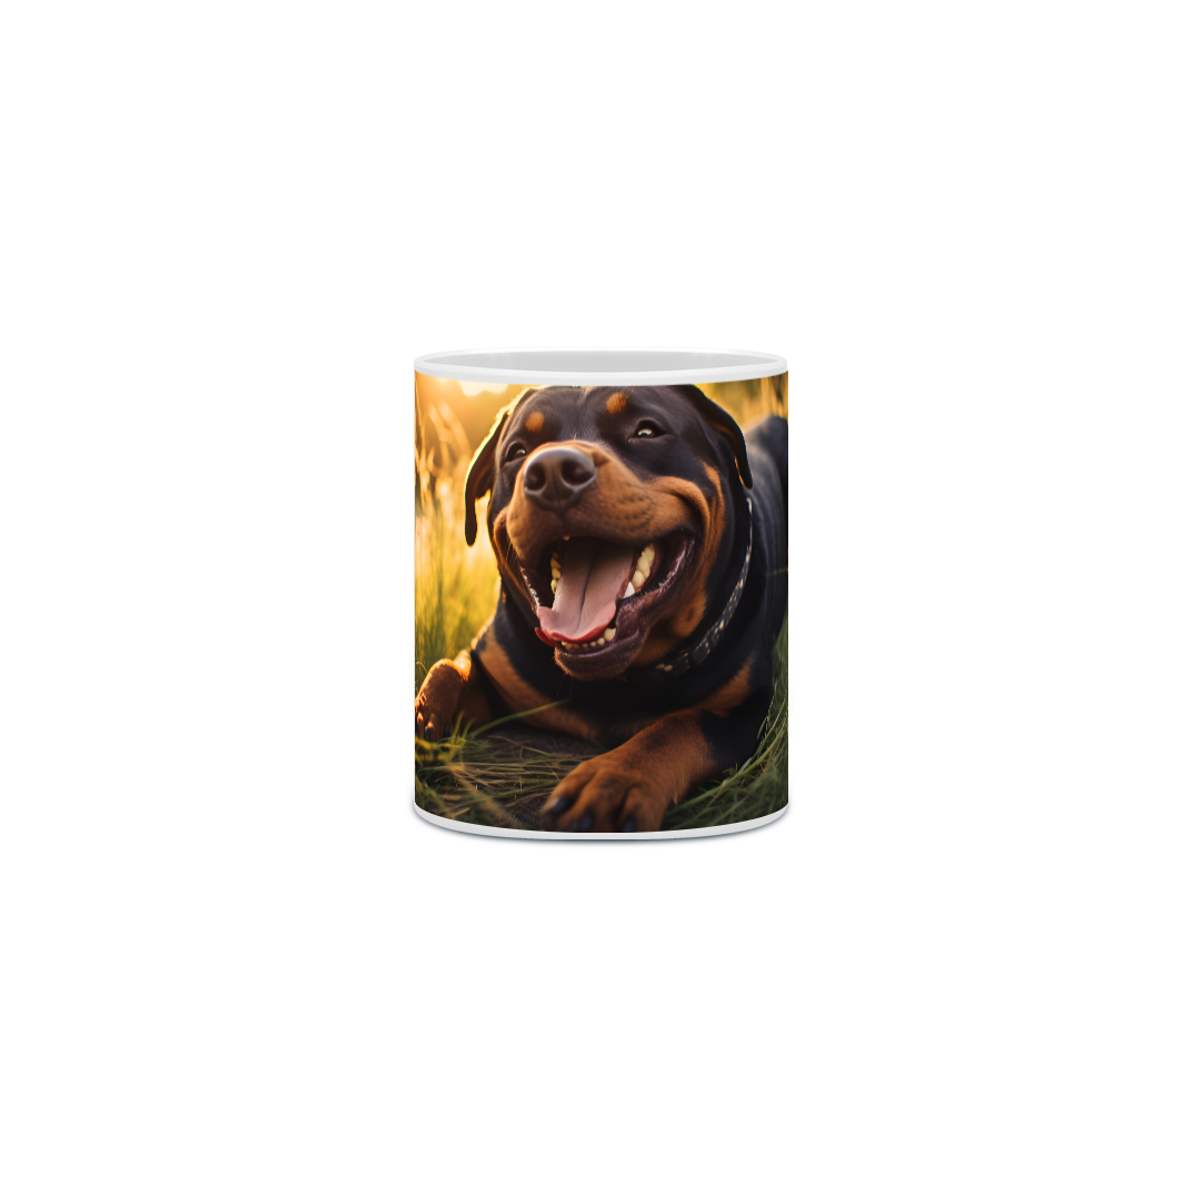 Nome do produto: Caneca Rottweiler com Arte Digital - #Autenticidade 0009